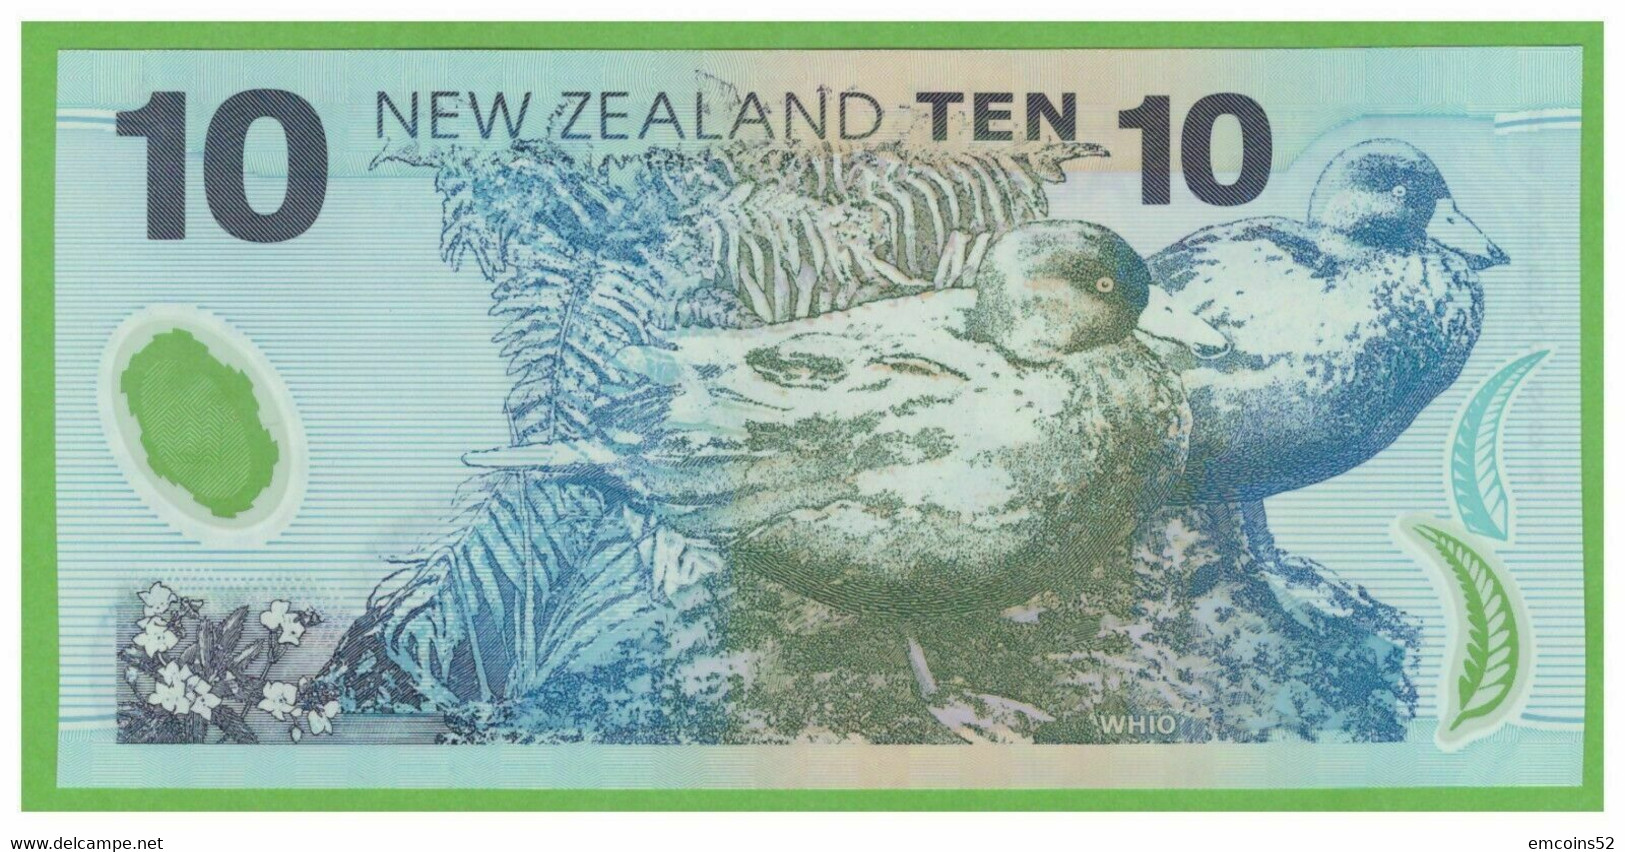 NEW ZEALAND 10 DOLLARS 1999  P-186a  UNC - Neuseeland